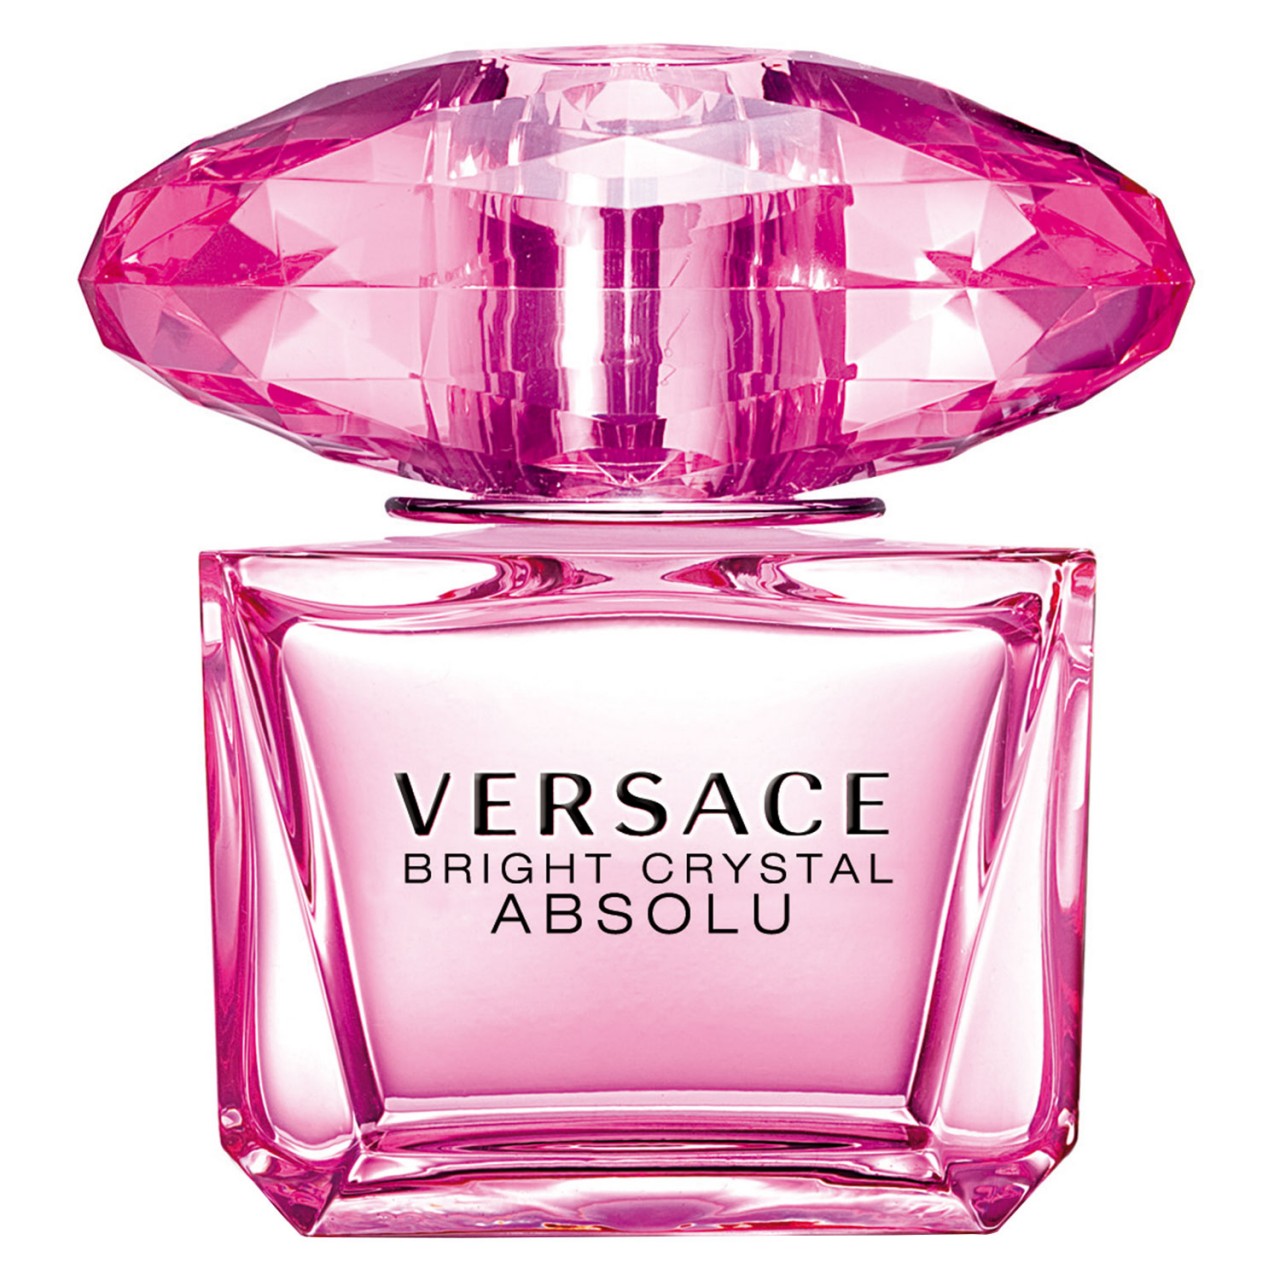 Bright Crystal - Absolu Eau de Parfum von Versace